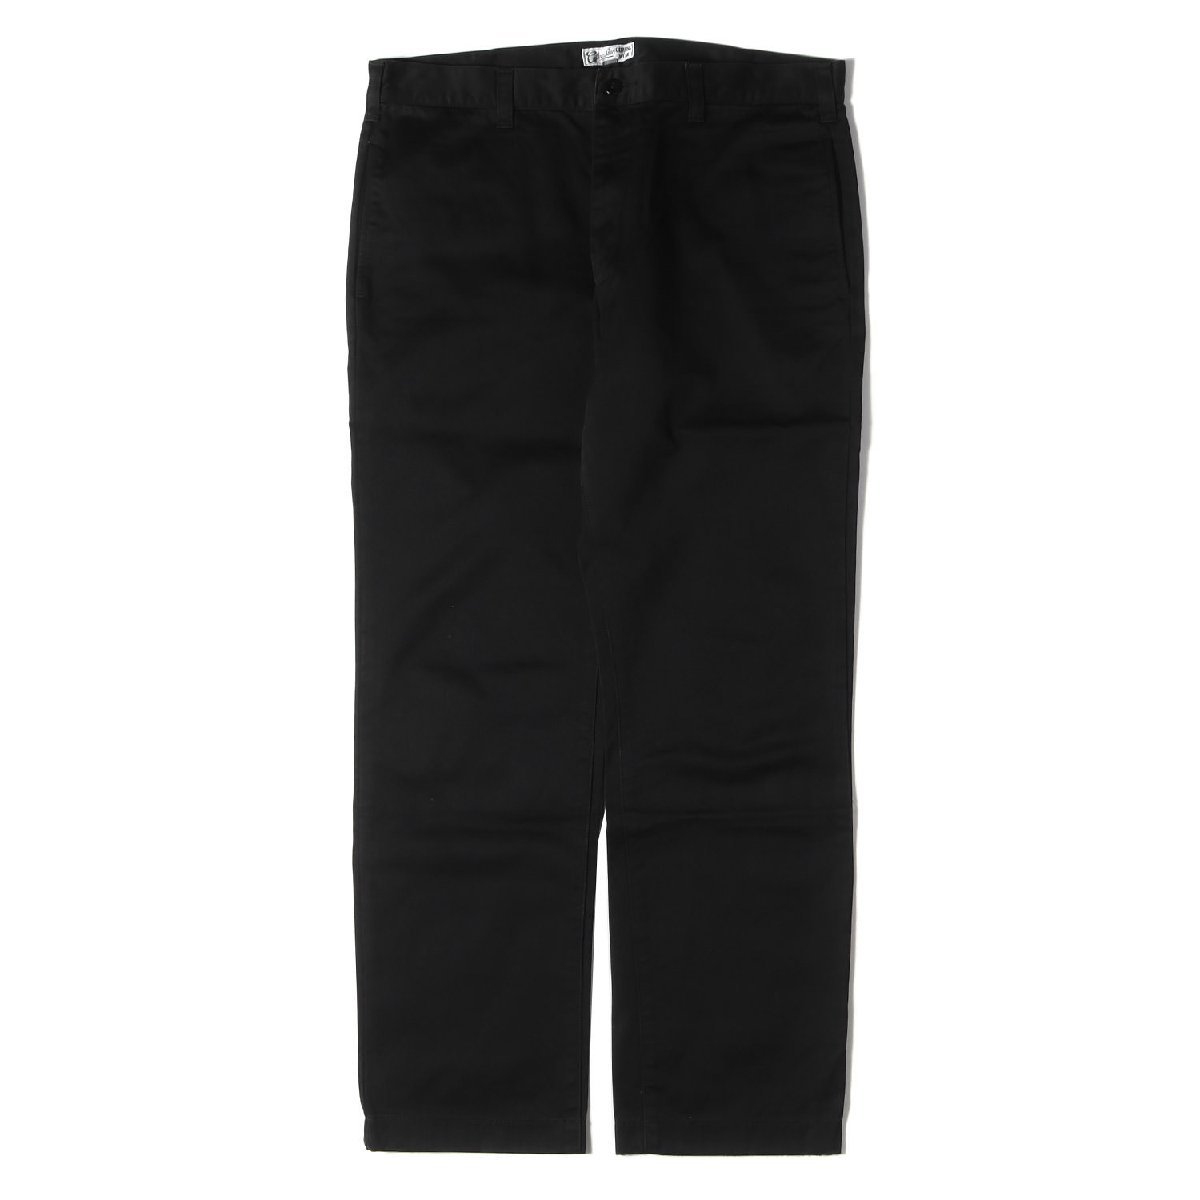 CALEE キャリー パンツ サイズ:XL コットンツイル ワーク チノ パンツ ブラック 黒 ボトムス ズボン アメカジ ストリート ブランド